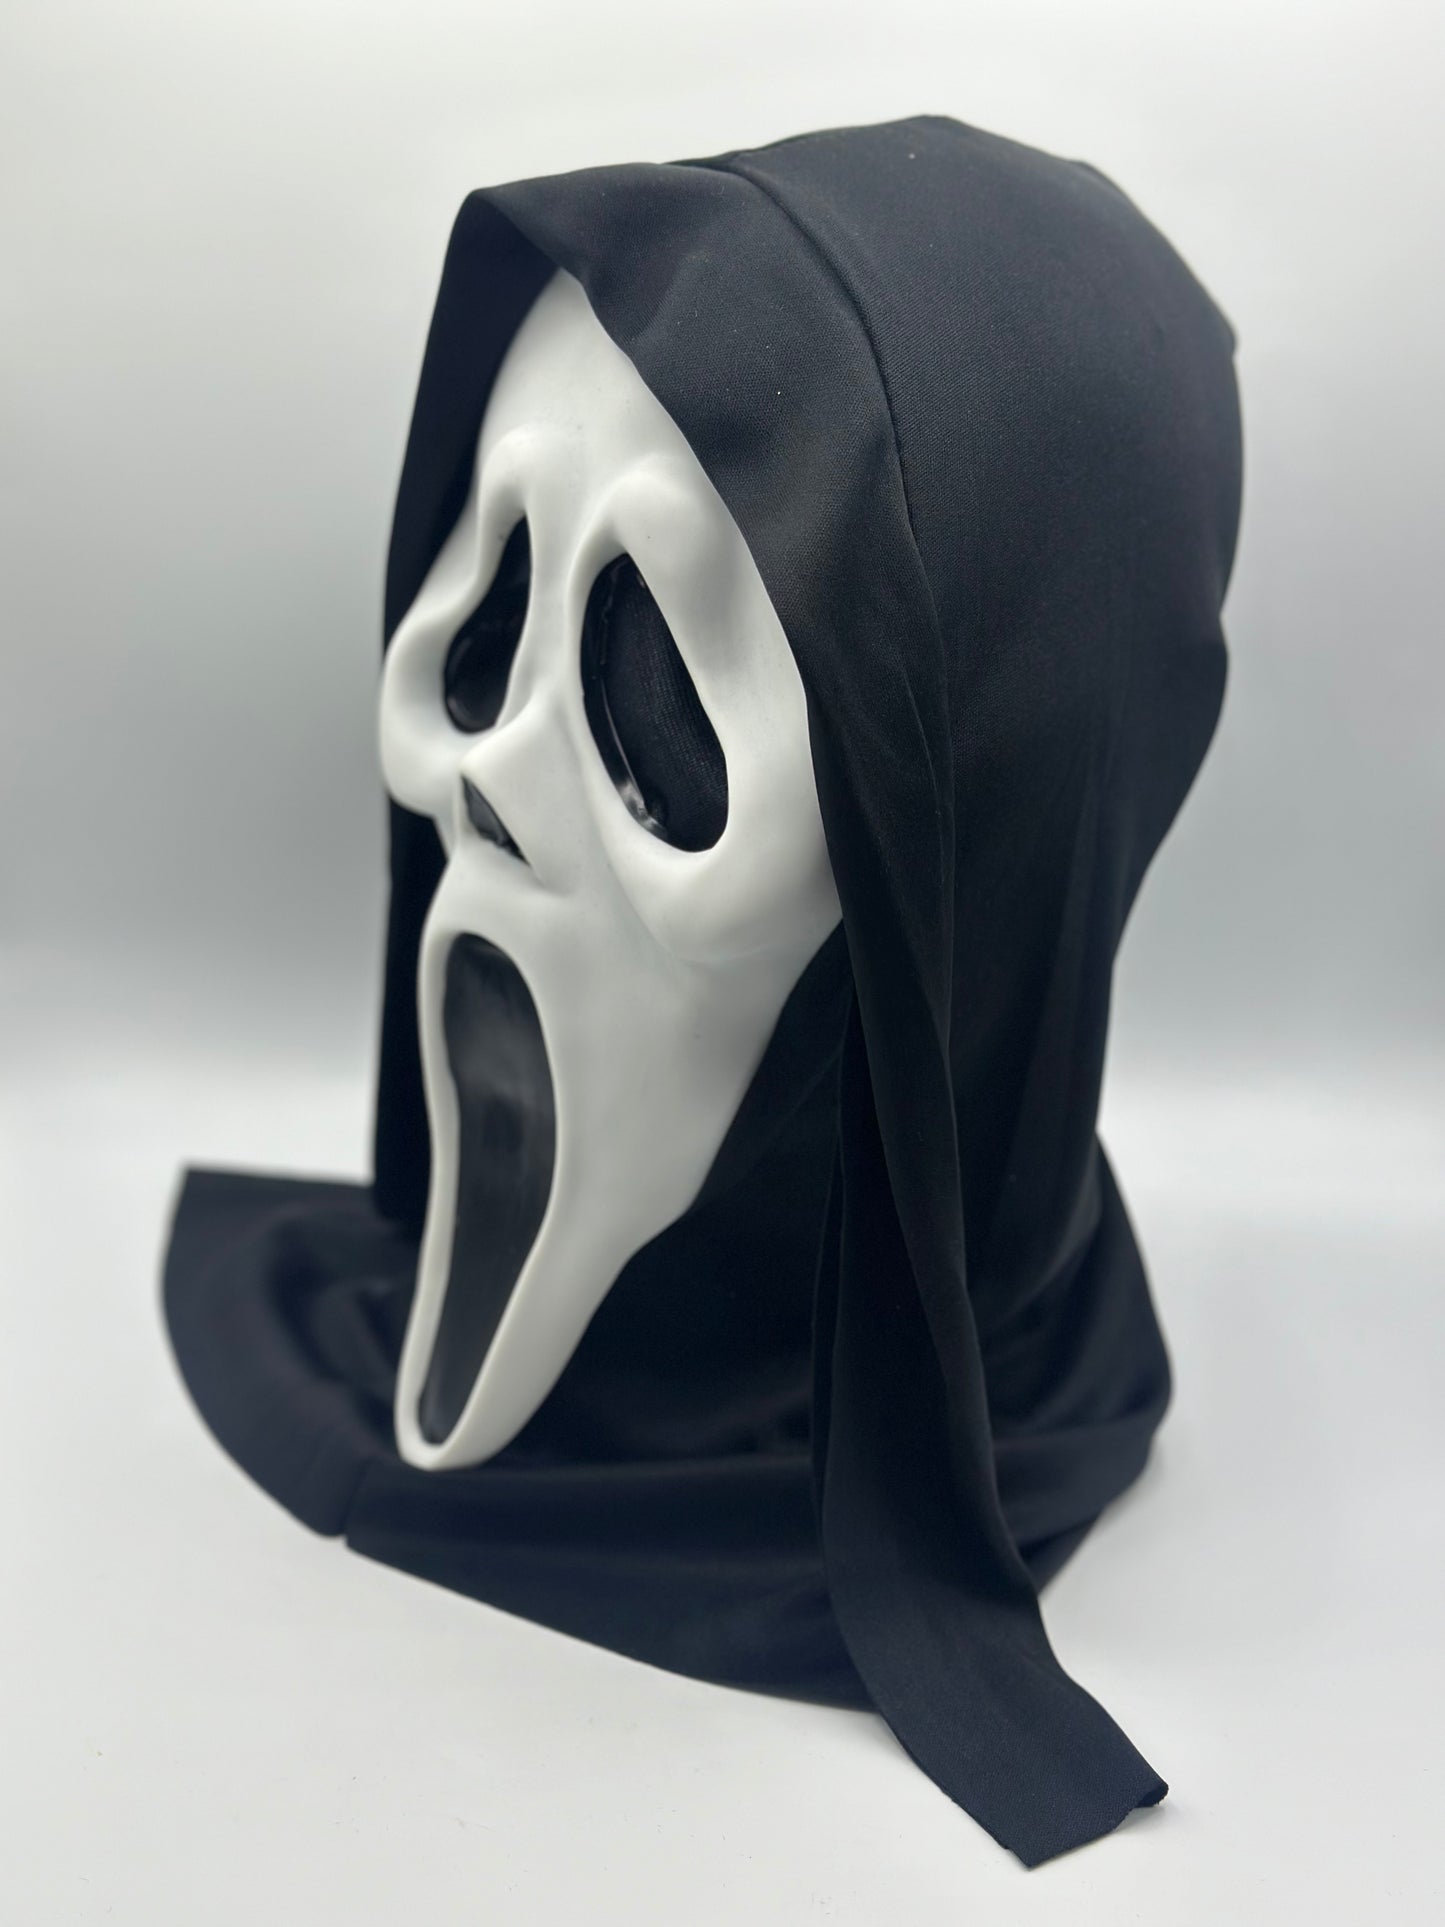 Scream-Maske, Ghostface-Maske aus dem Scream-Film